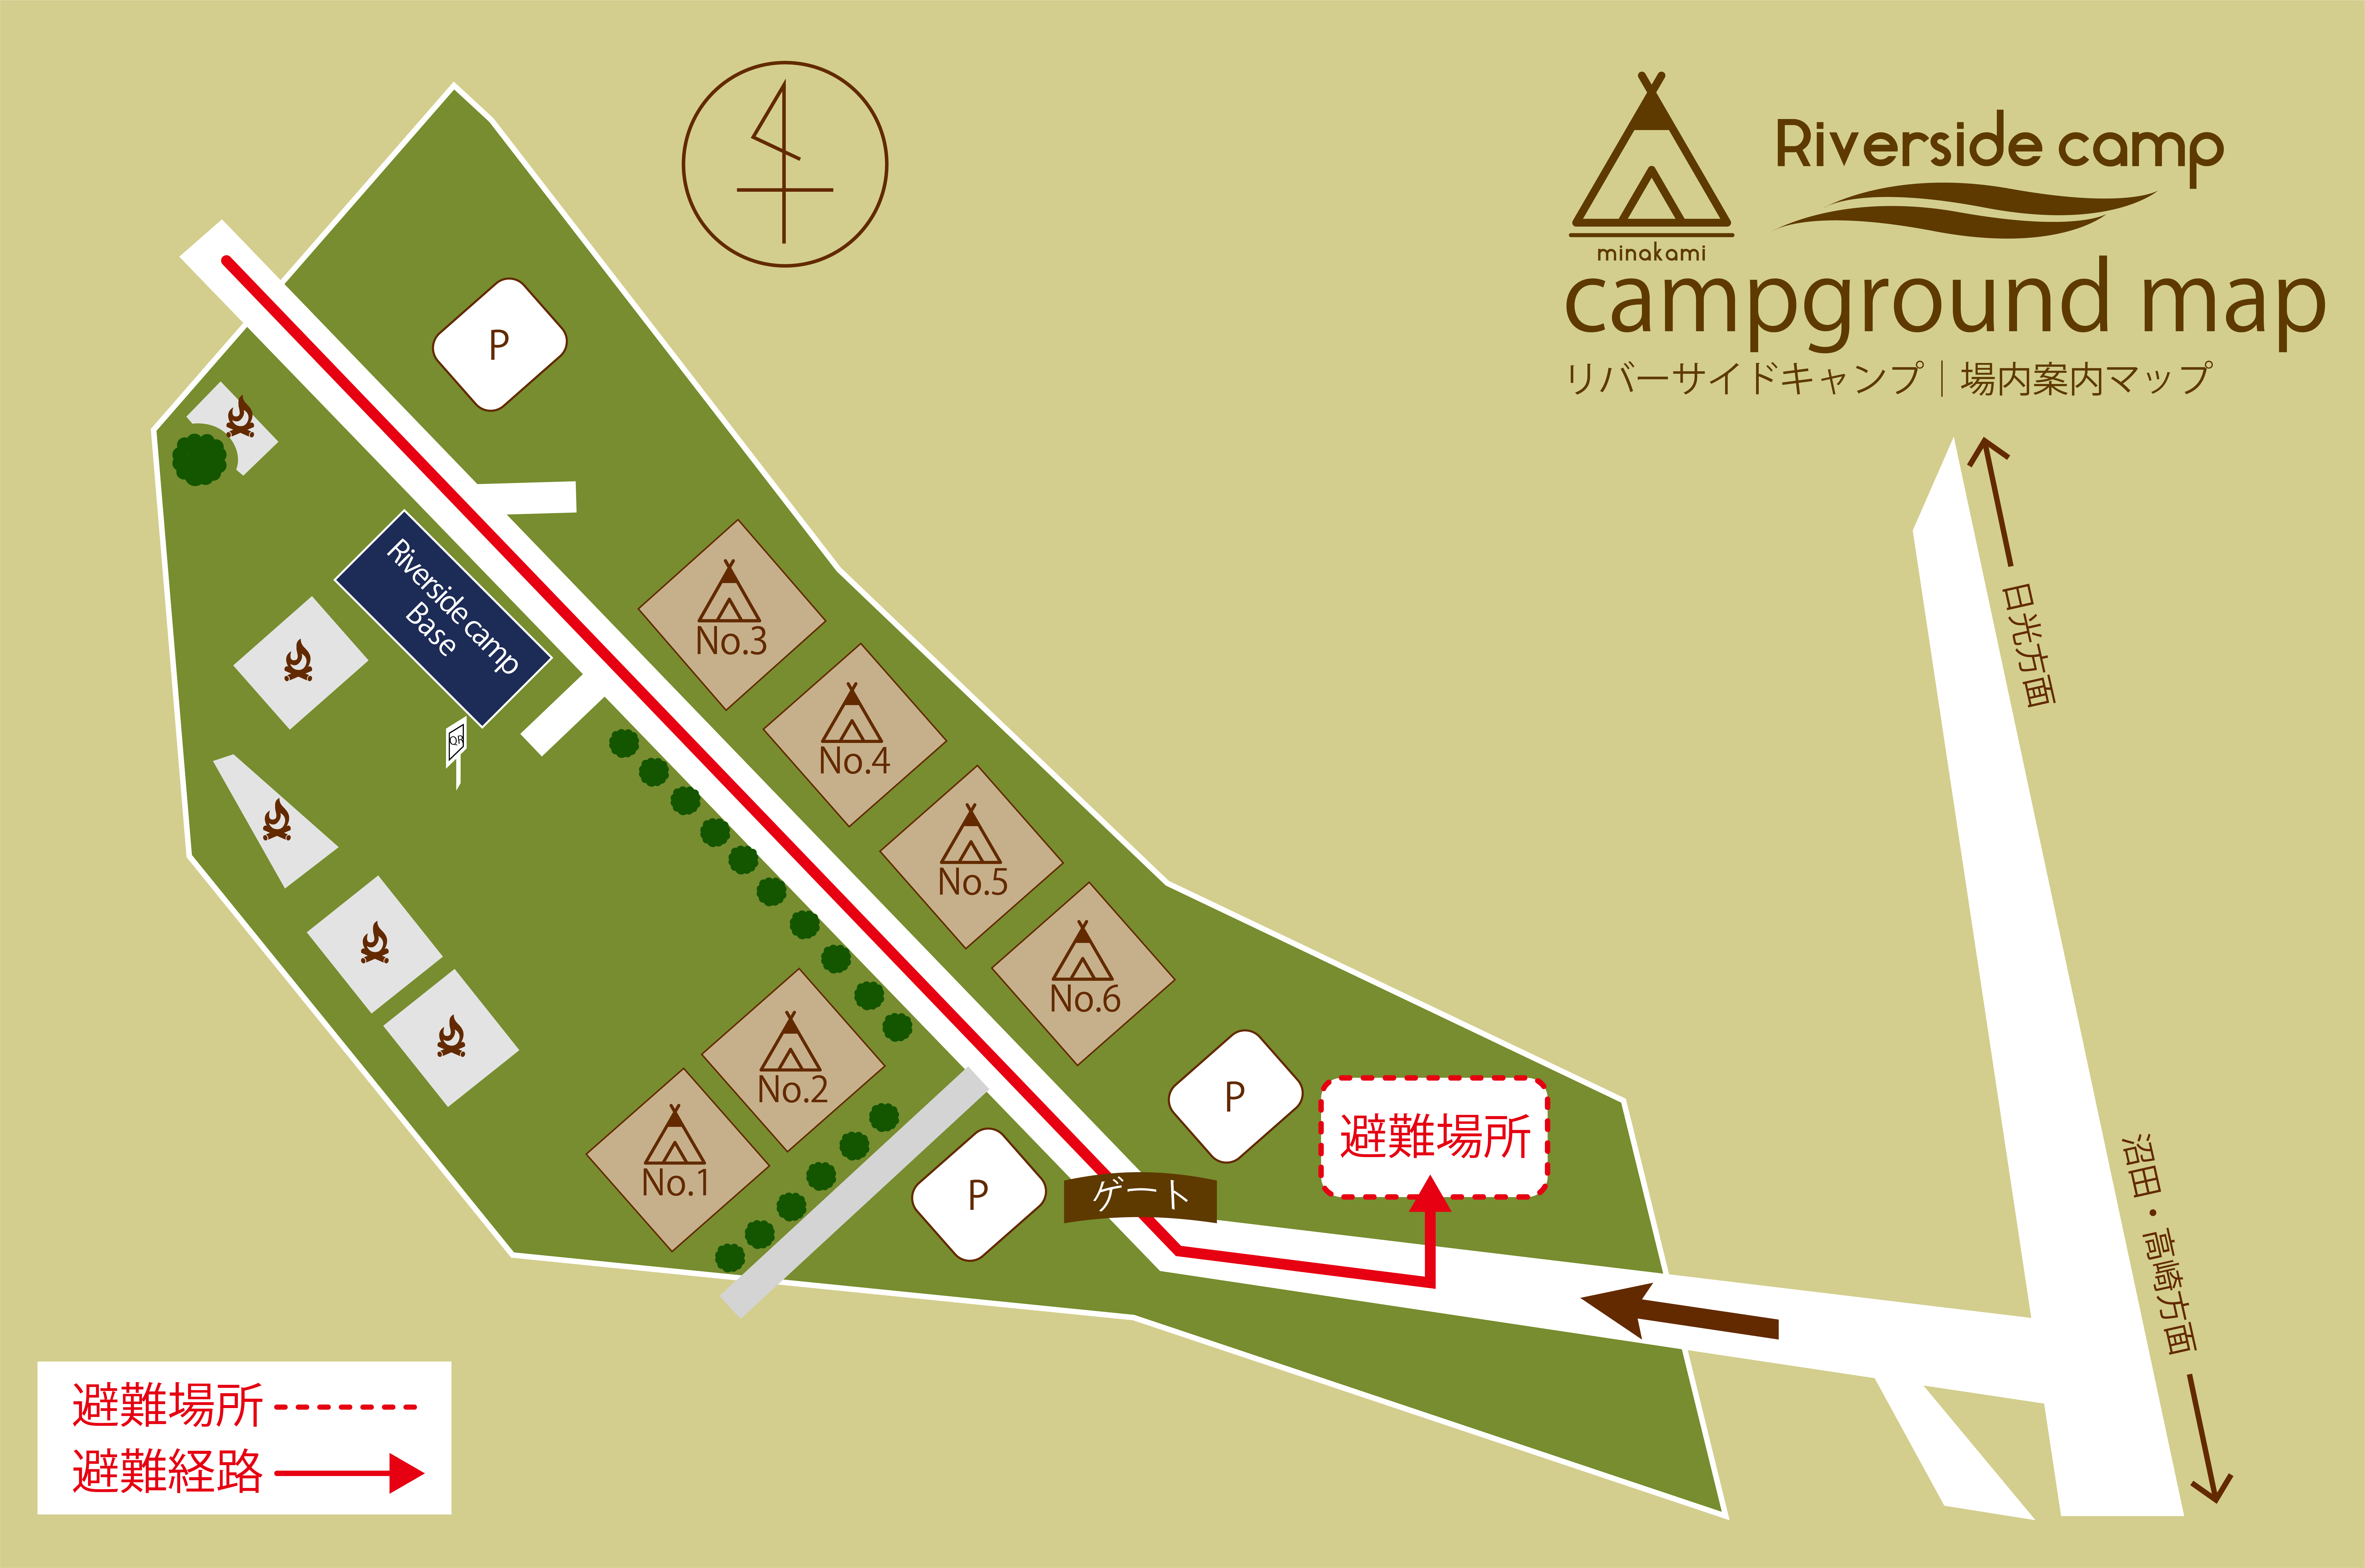 場内案内マップ | Riverside camp